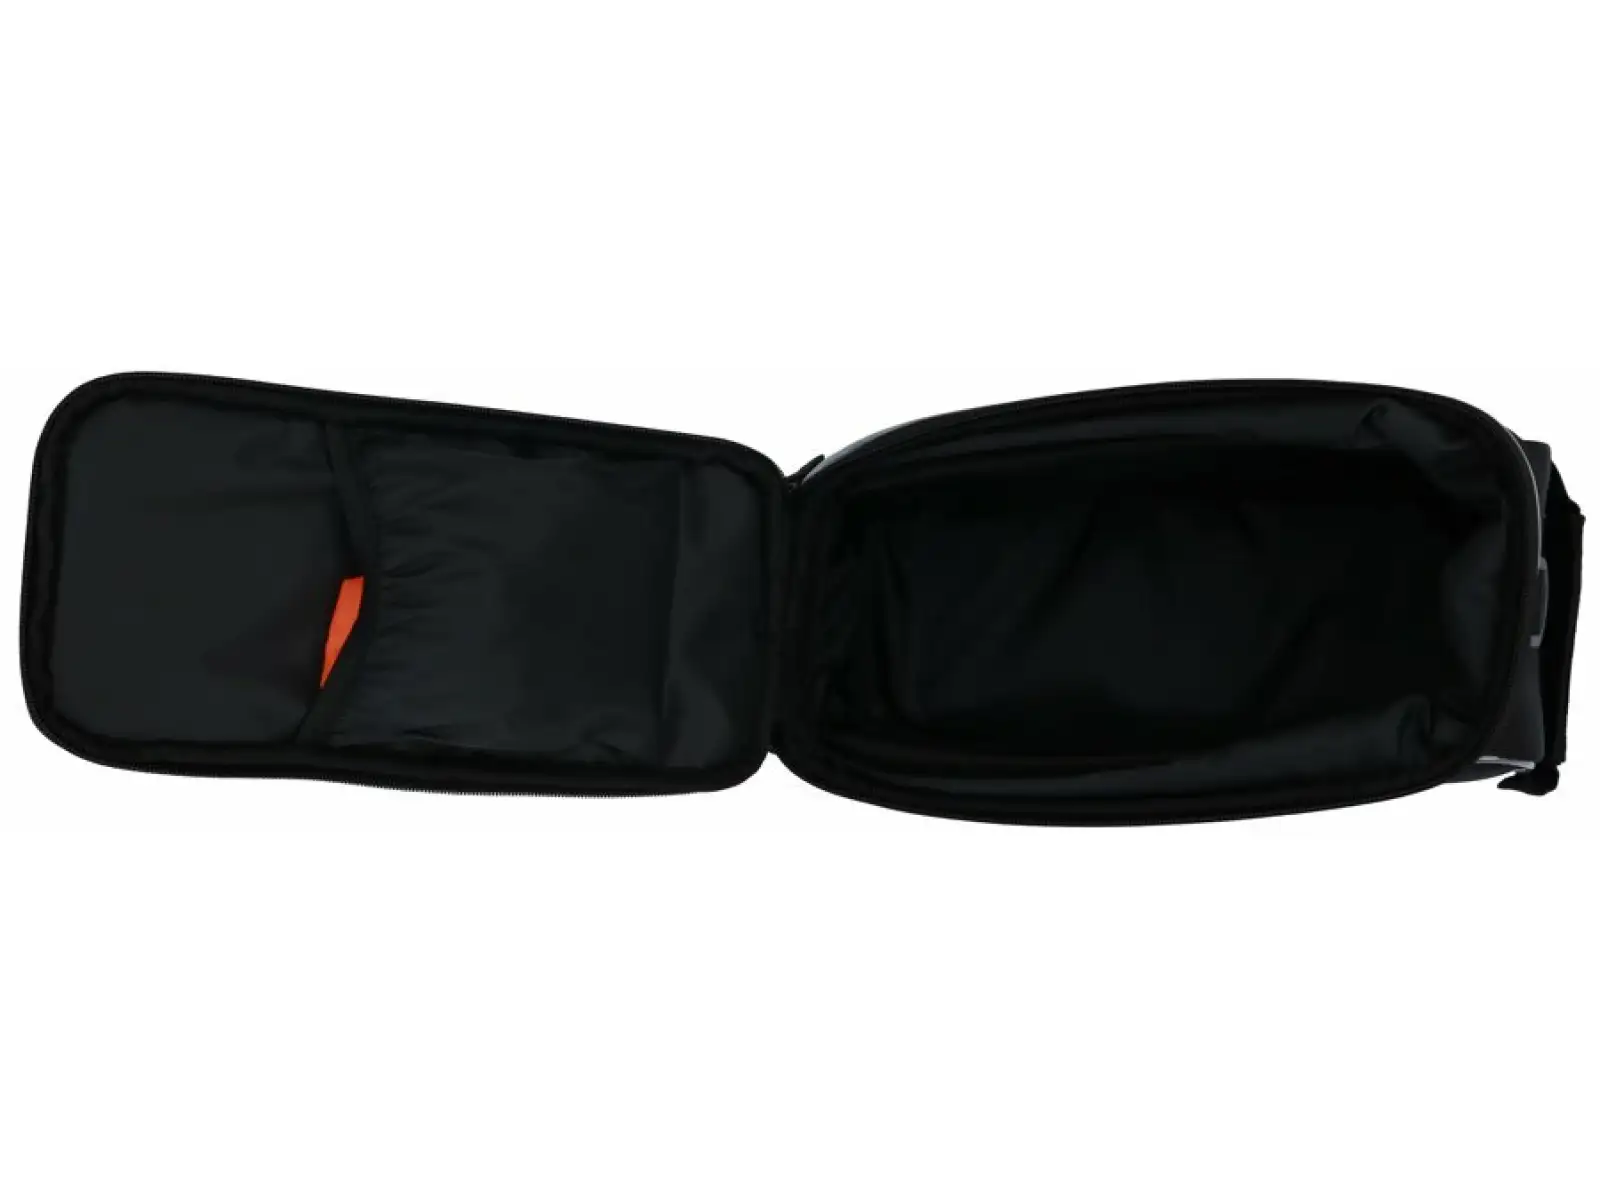 Nosná taška Max1 Rackbag čierna 9,6 l